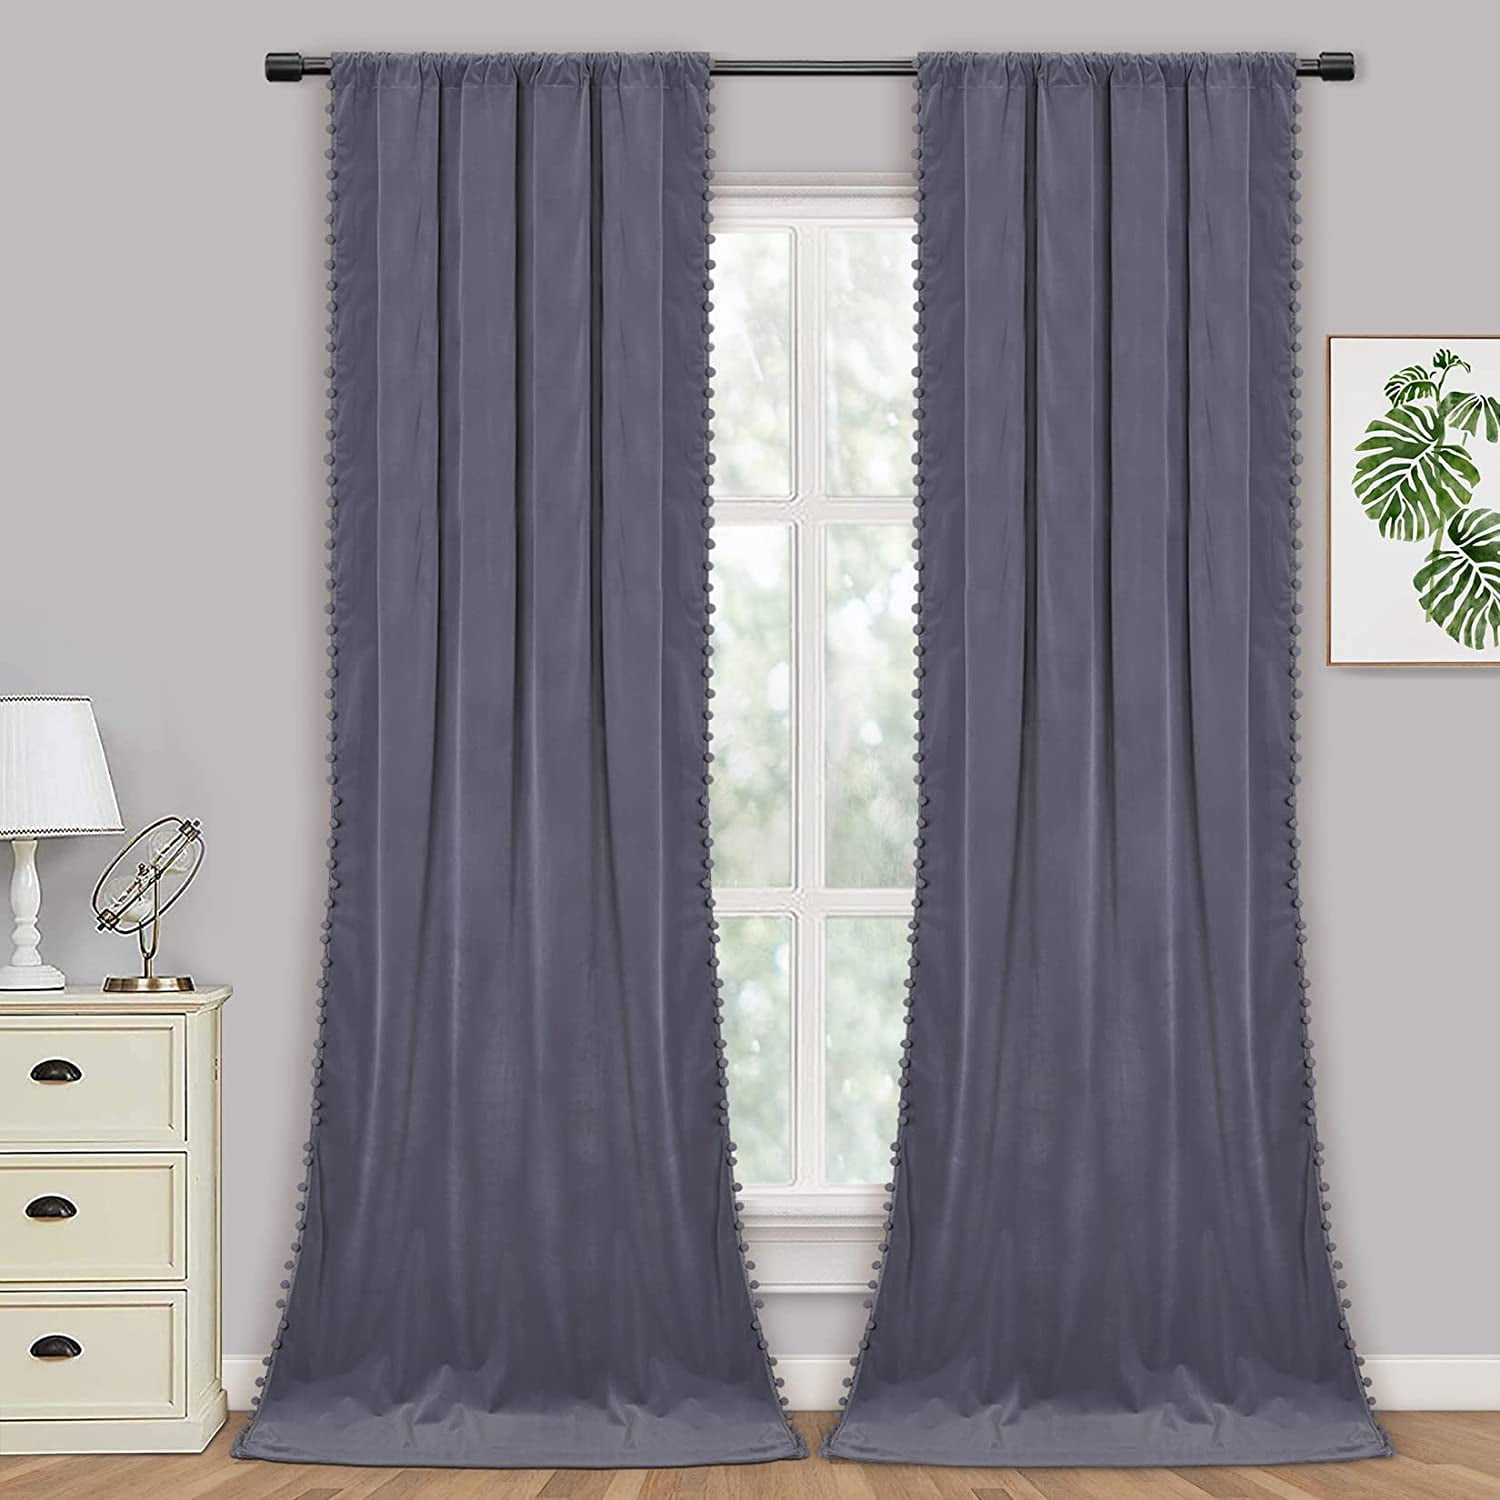 Velvet Pom Pom Curtains 108 Inches Long-Pompoms Tasseled